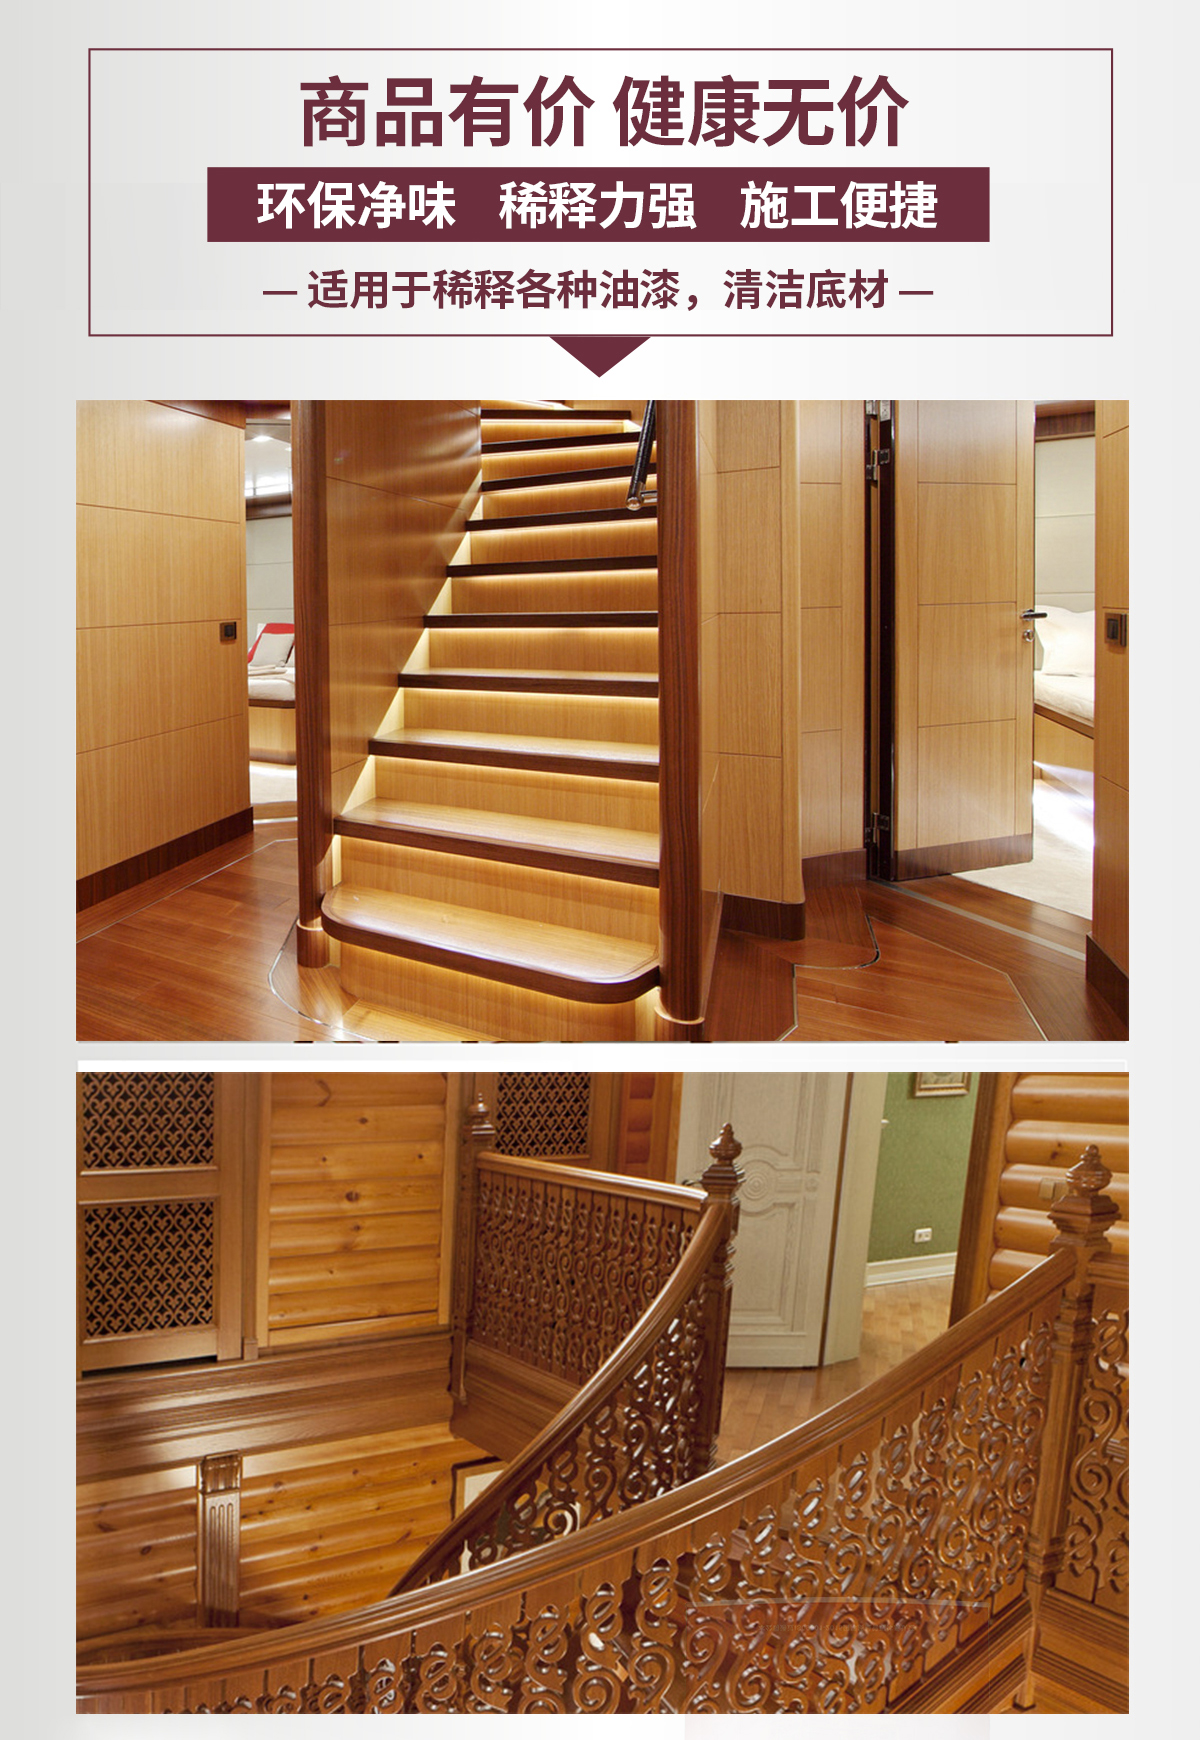 佳顺高档楼梯系列家具漆-长图详情页_10.jpg